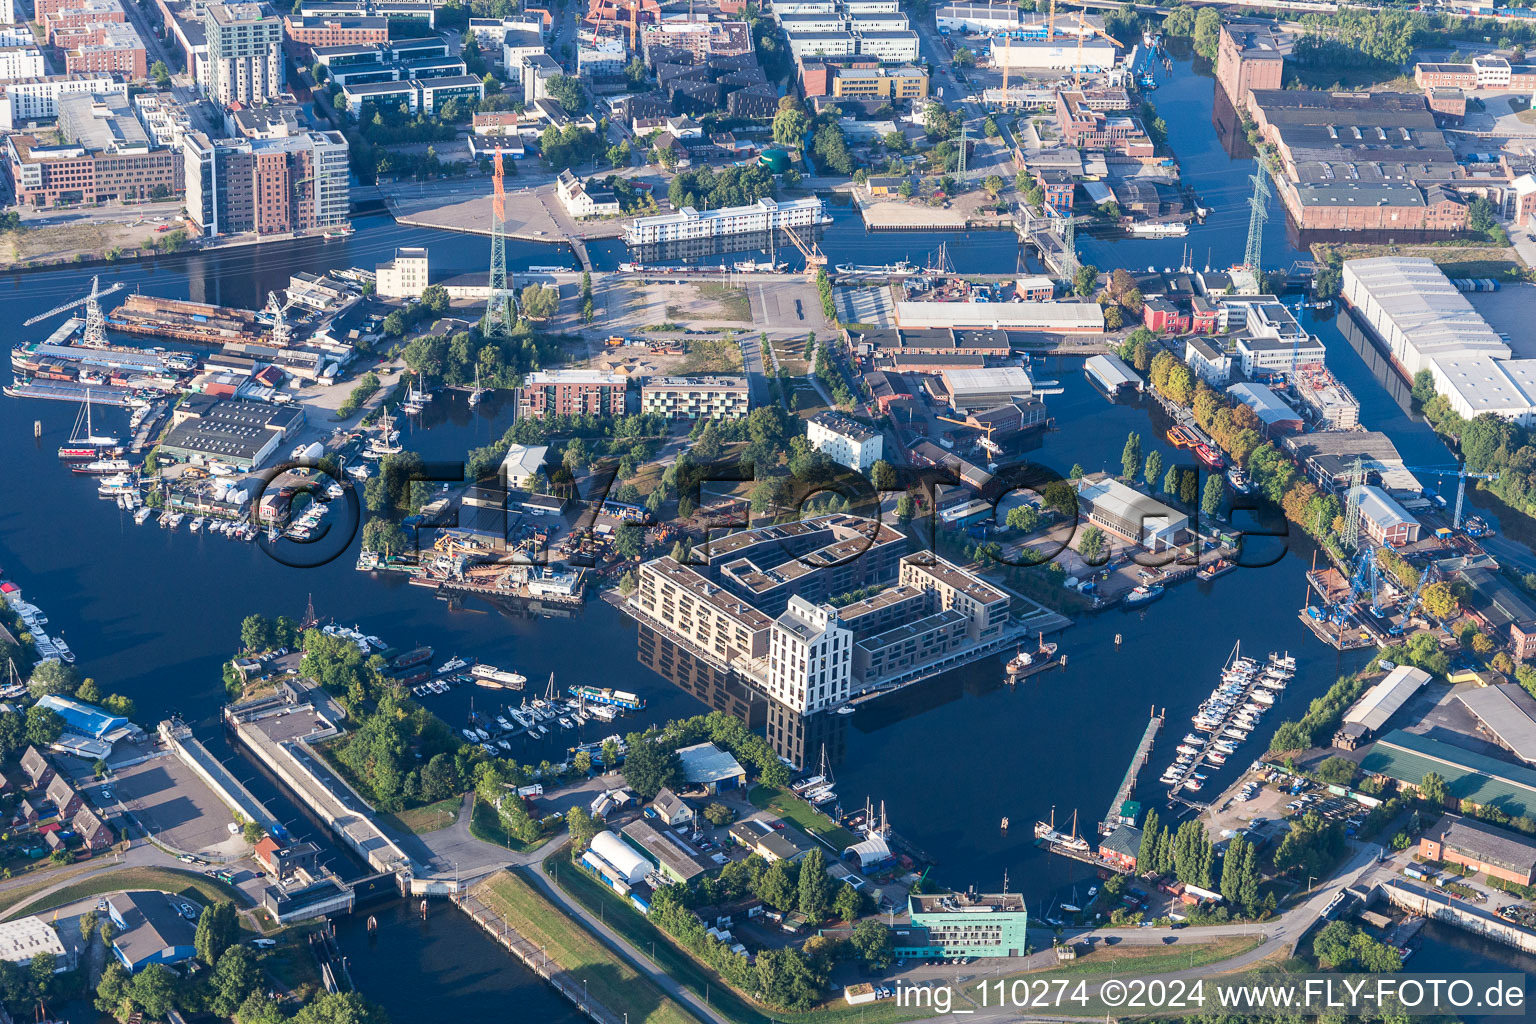 Luftbild von Schlossinsel Marina in den Harburger Häfen im Ortsteil Harburg in Hamburg, Deutschland